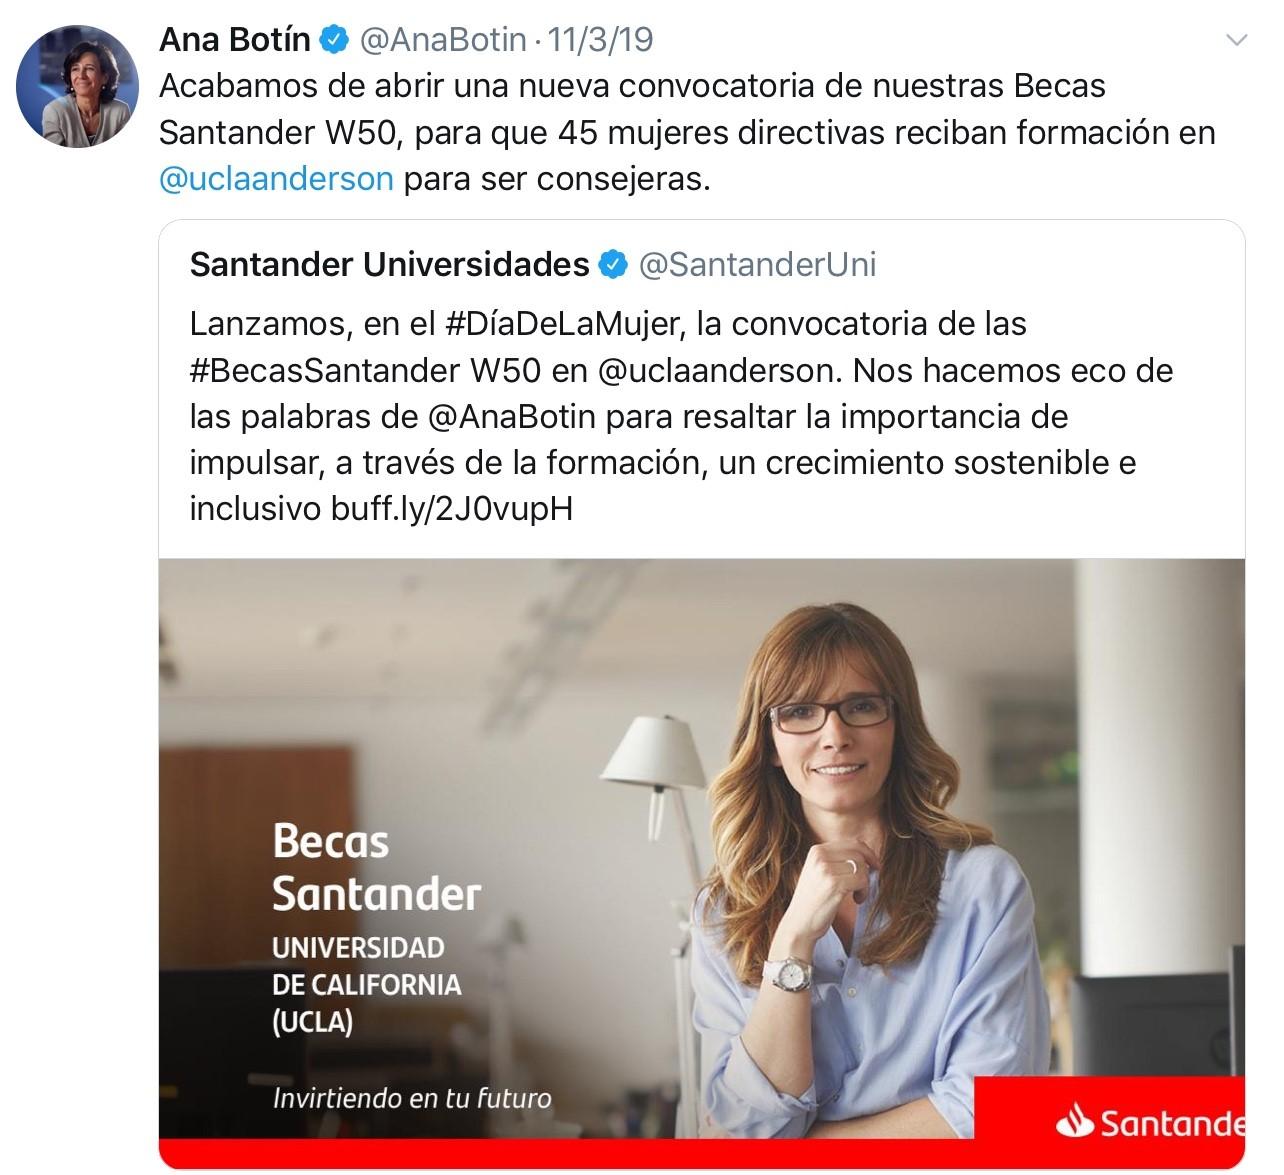 Tuit de Ana Botín sobre las Becas Santander W50 para directivas